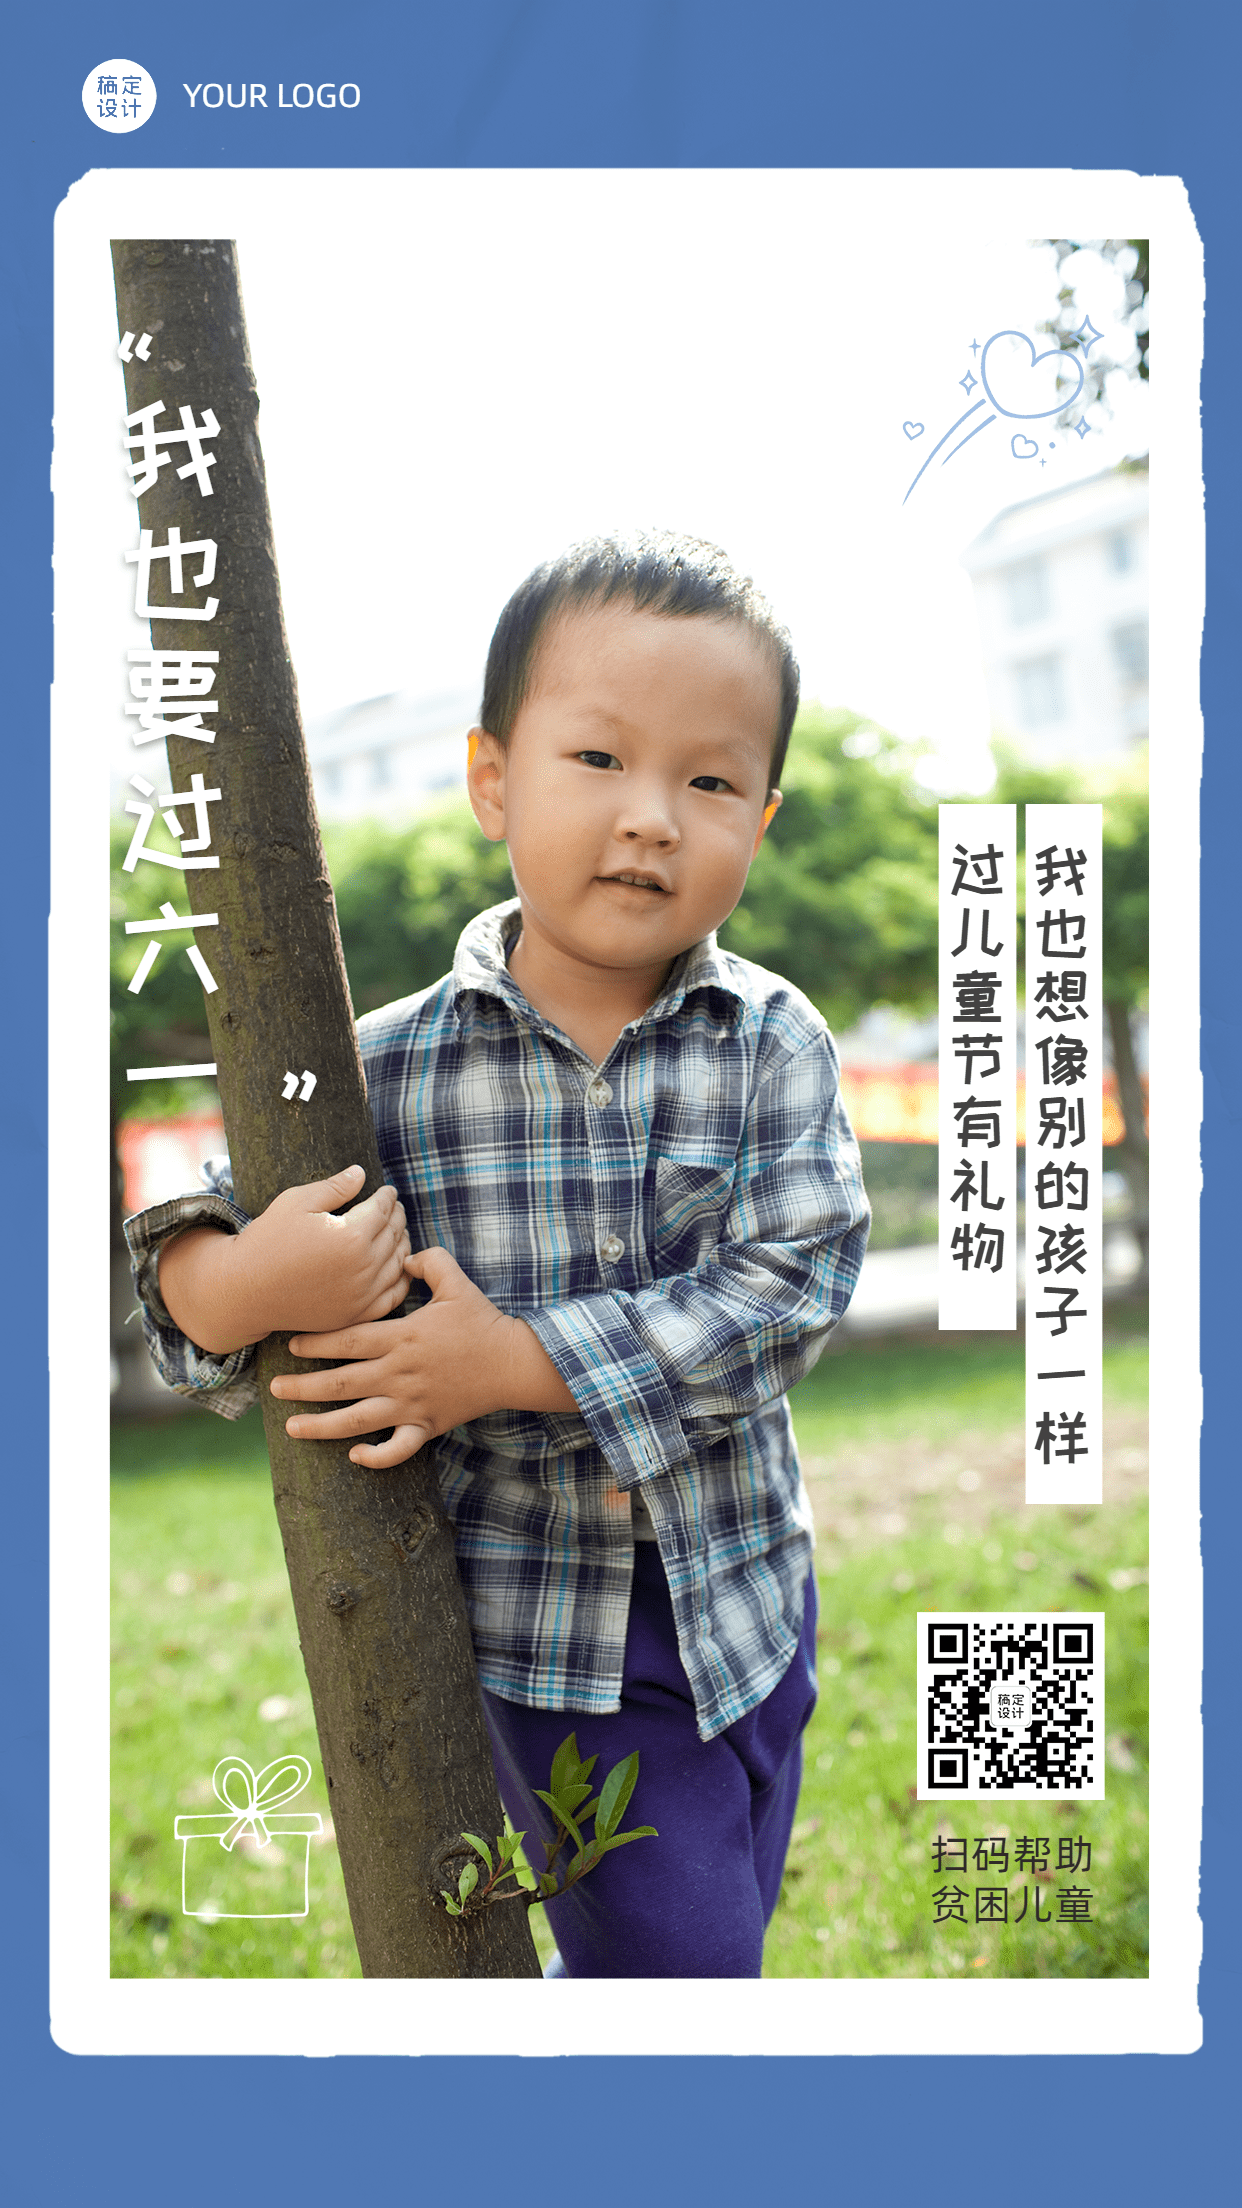 六一儿童节公益宣传关爱贫困儿童手机海报预览效果